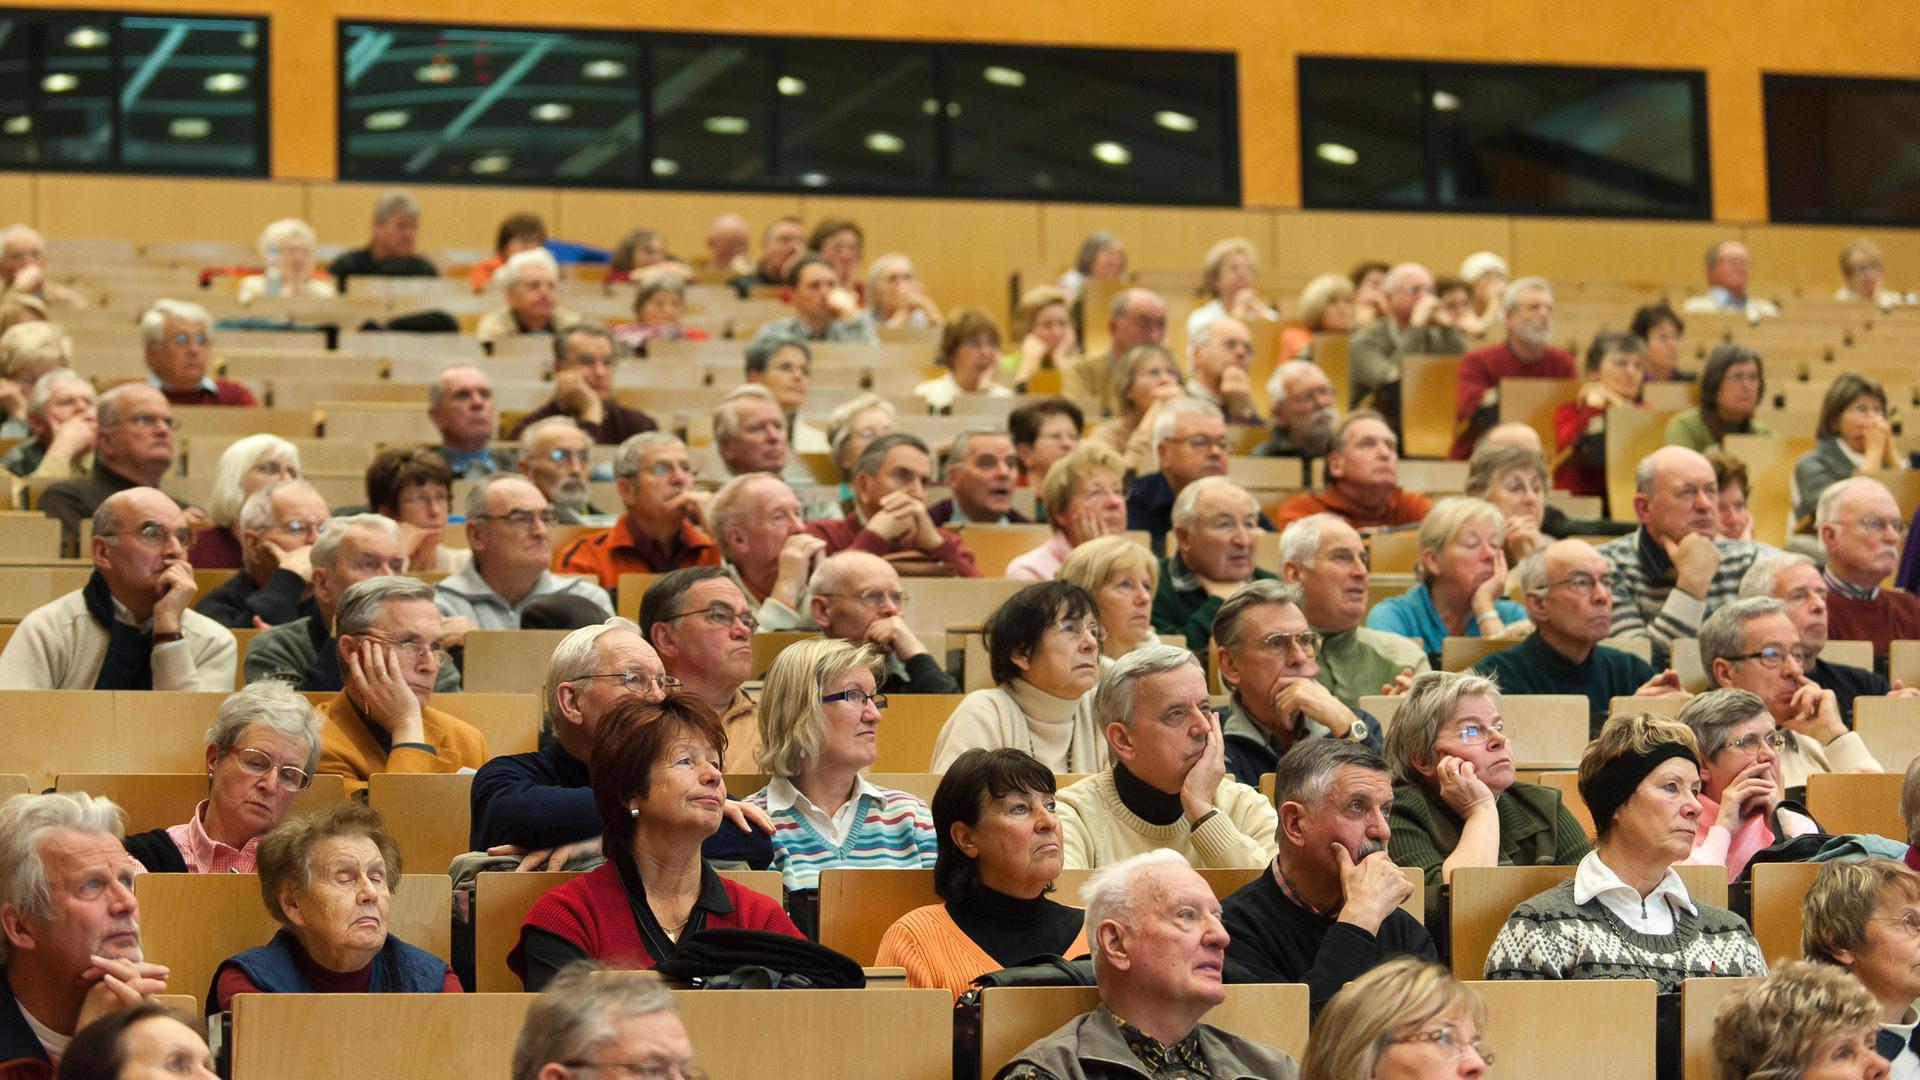 Senioren sitzen bei einer Veranstaltung in den Reihen eines Auditoriums.